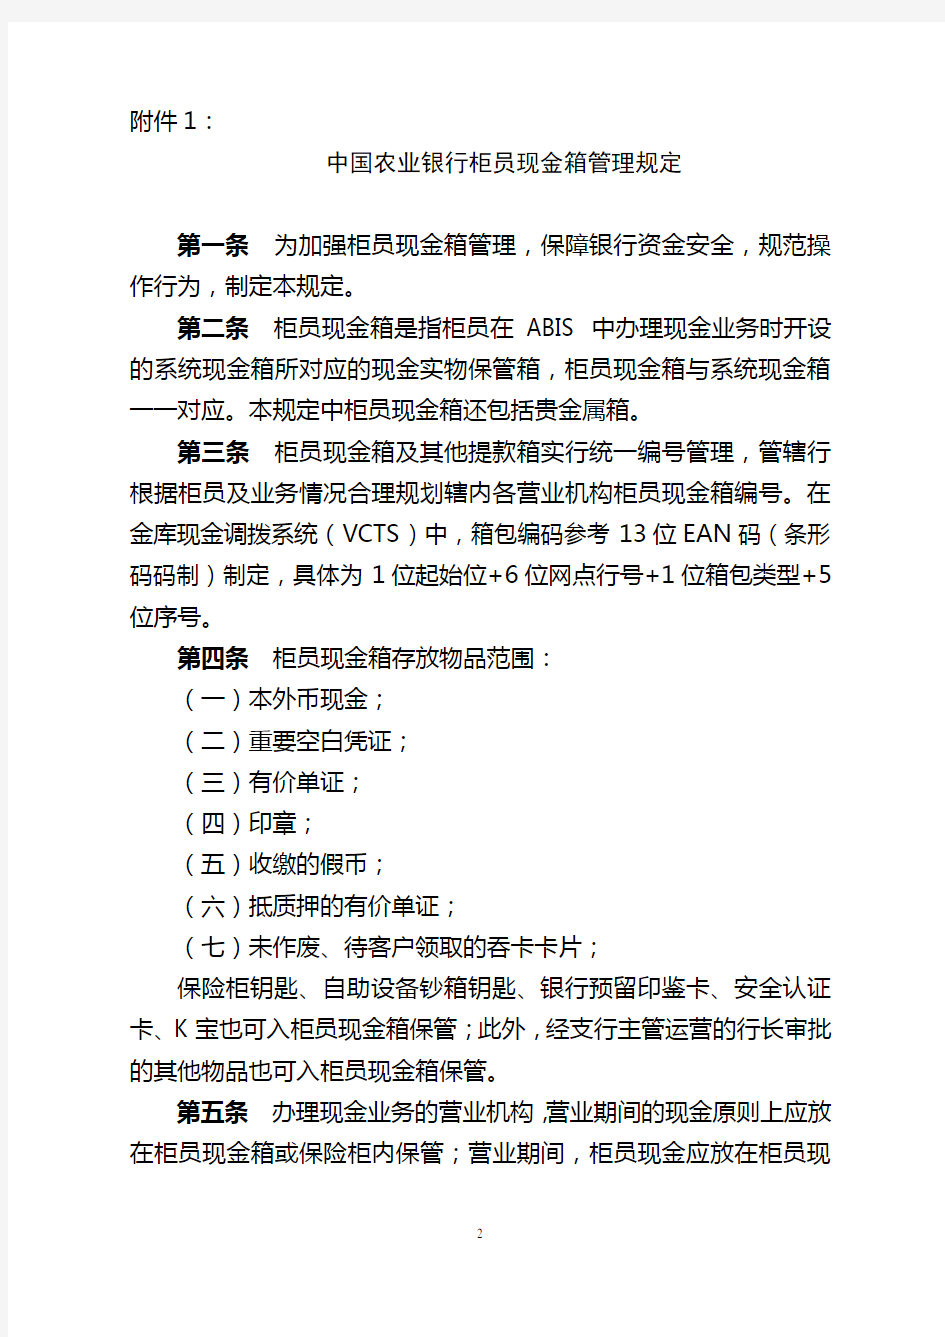 中国农业银行柜员现金箱管理规定